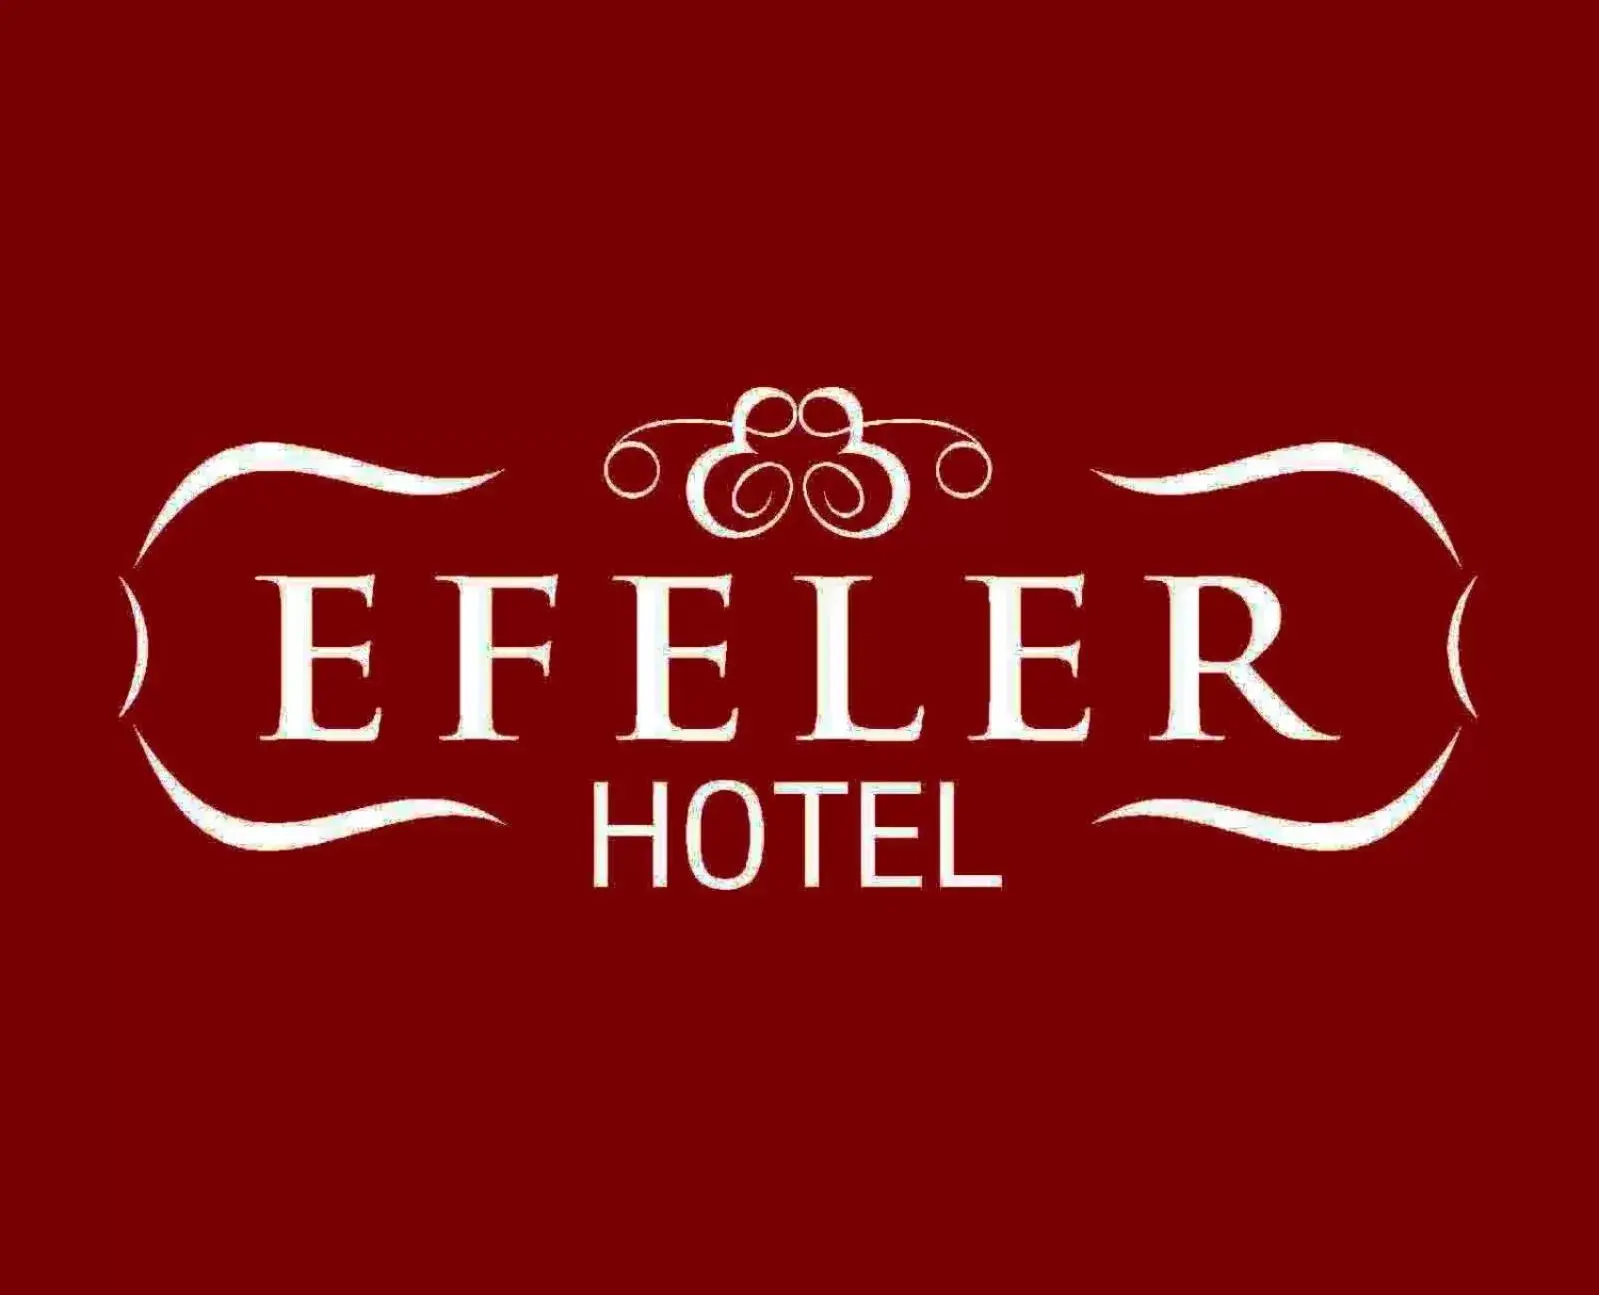 Property logo or sign in Efeler Hotel